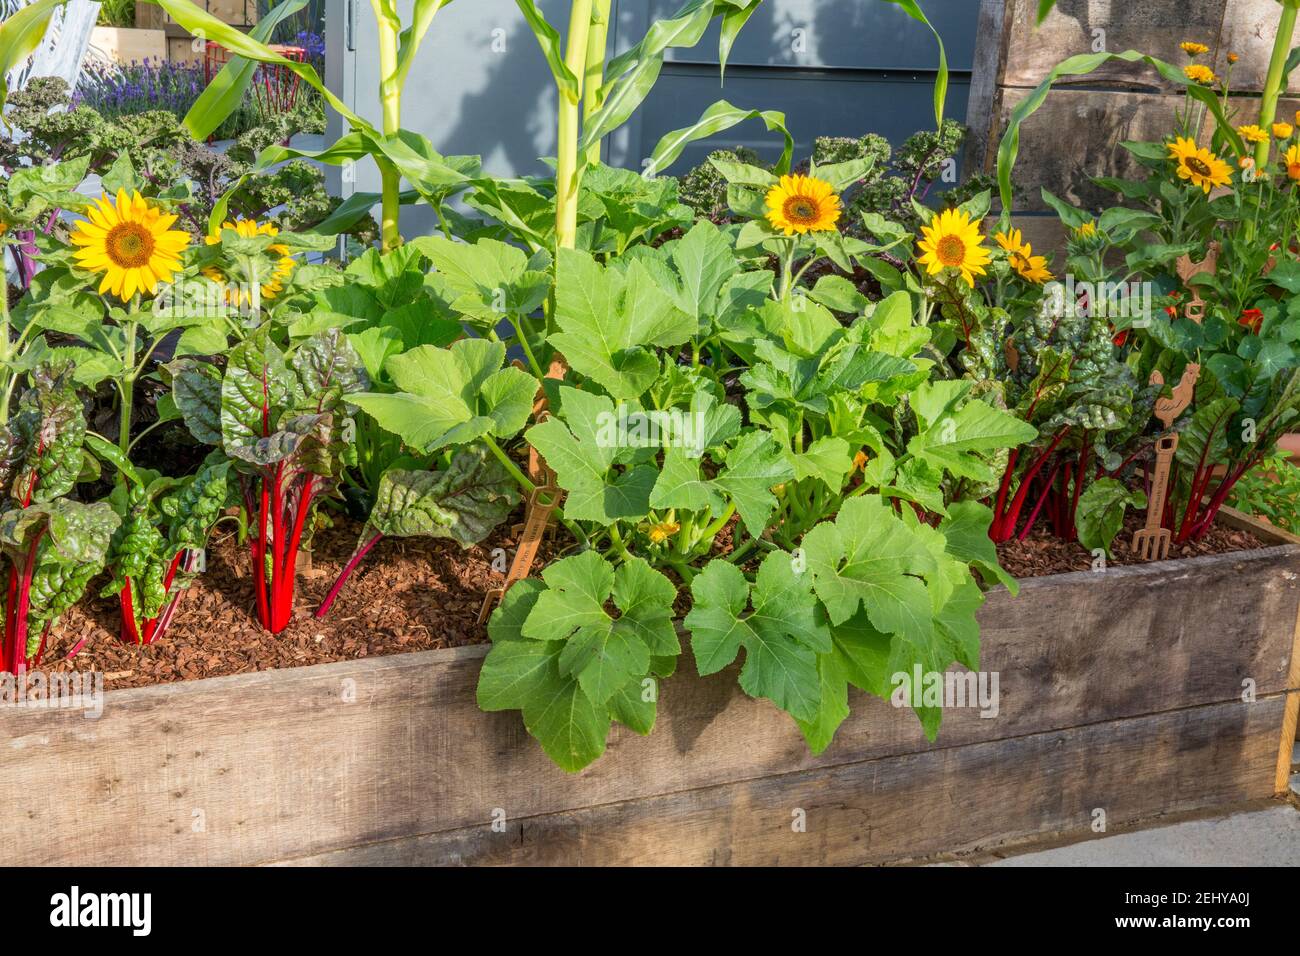 Kleiner Garten Bio-Gemüse wächst in Hochbeeten, hergestellt aus alten Gerüstplanken, Pflanzen von Zuckermais, Beeetroot - Ruby chard UK Stockfoto